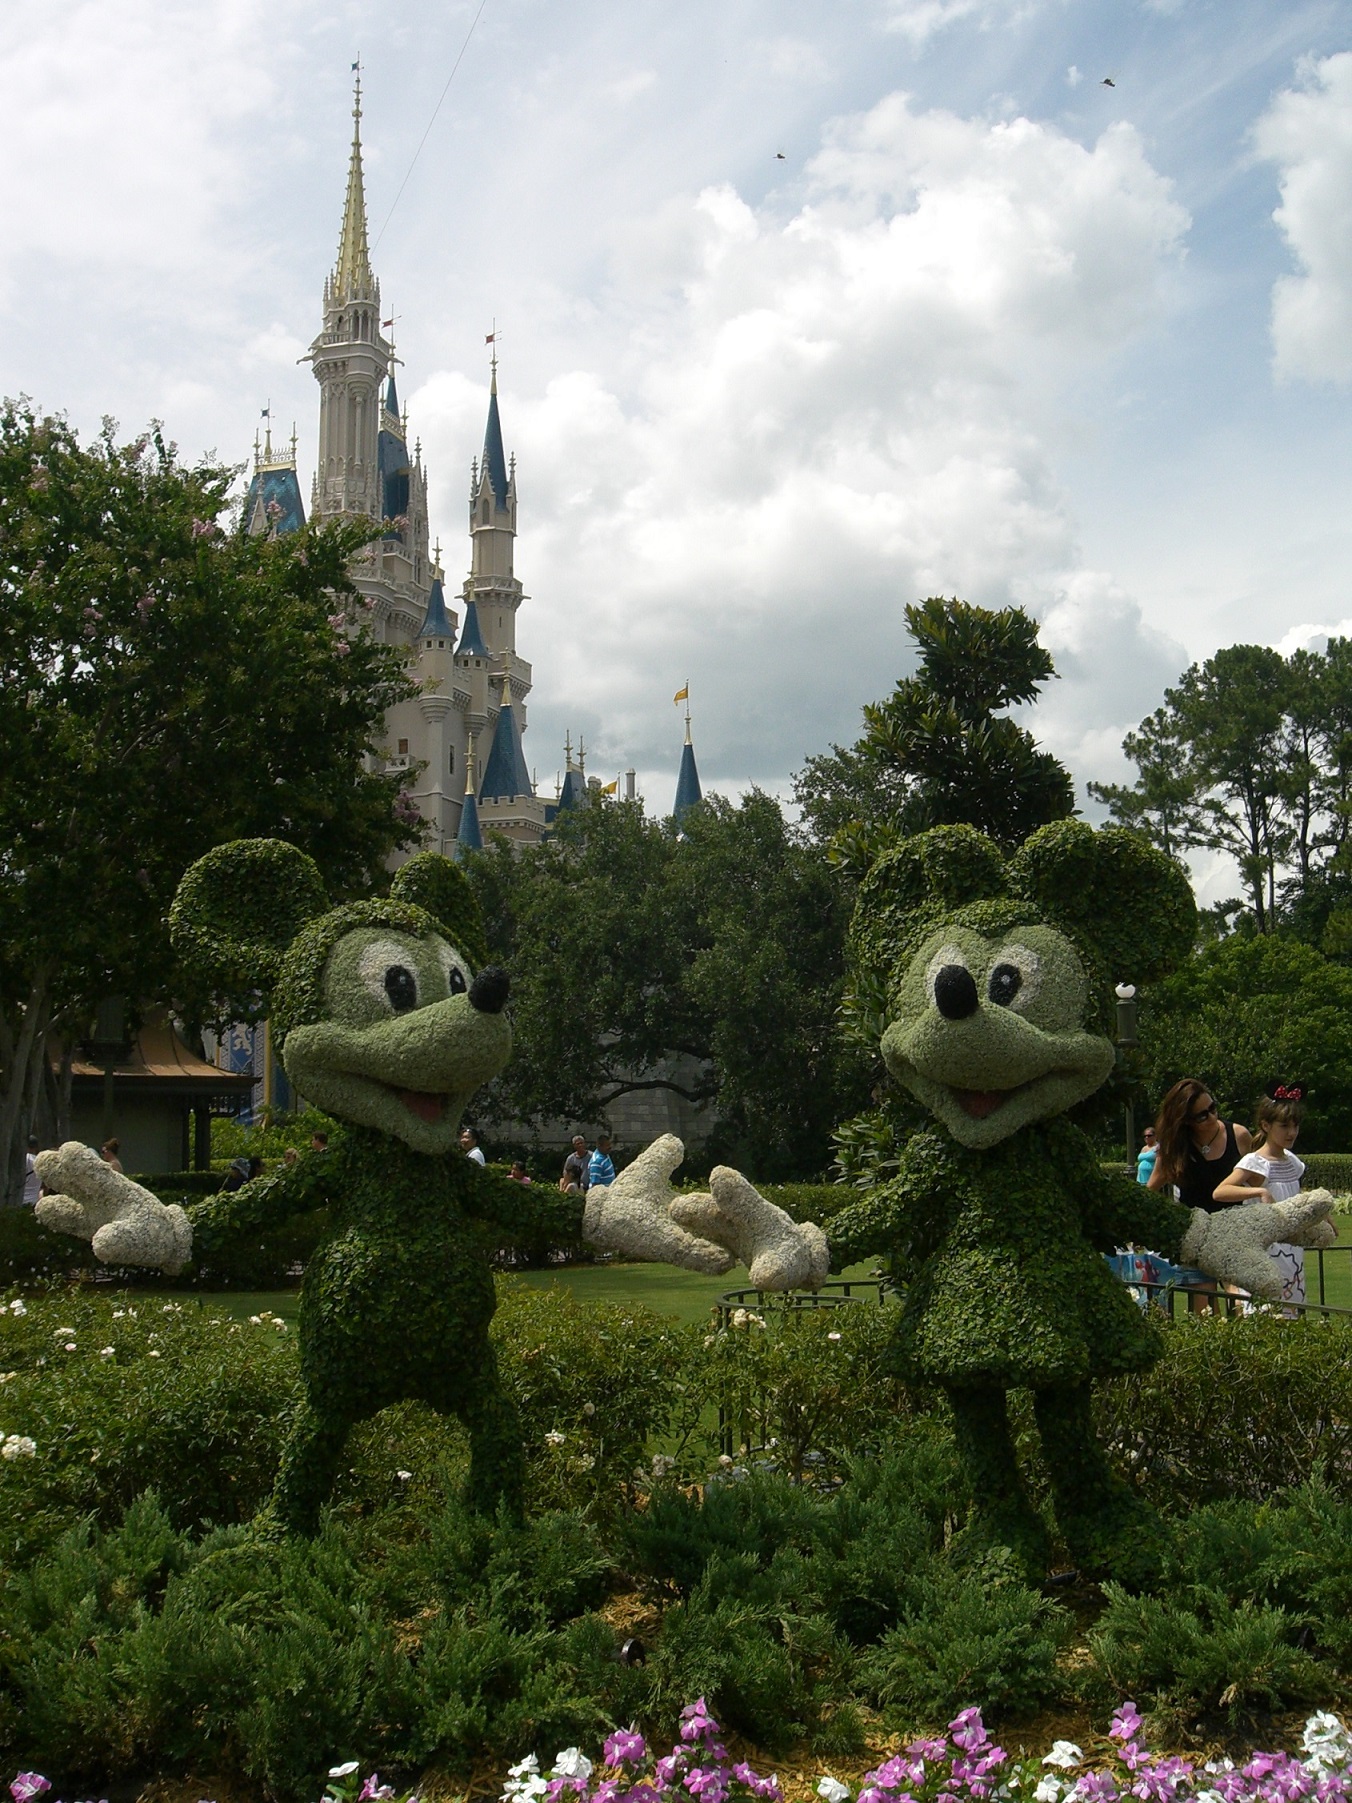 Mein Schiff Ausflugsziel: Mickey und Minnie im Magic Kingdom